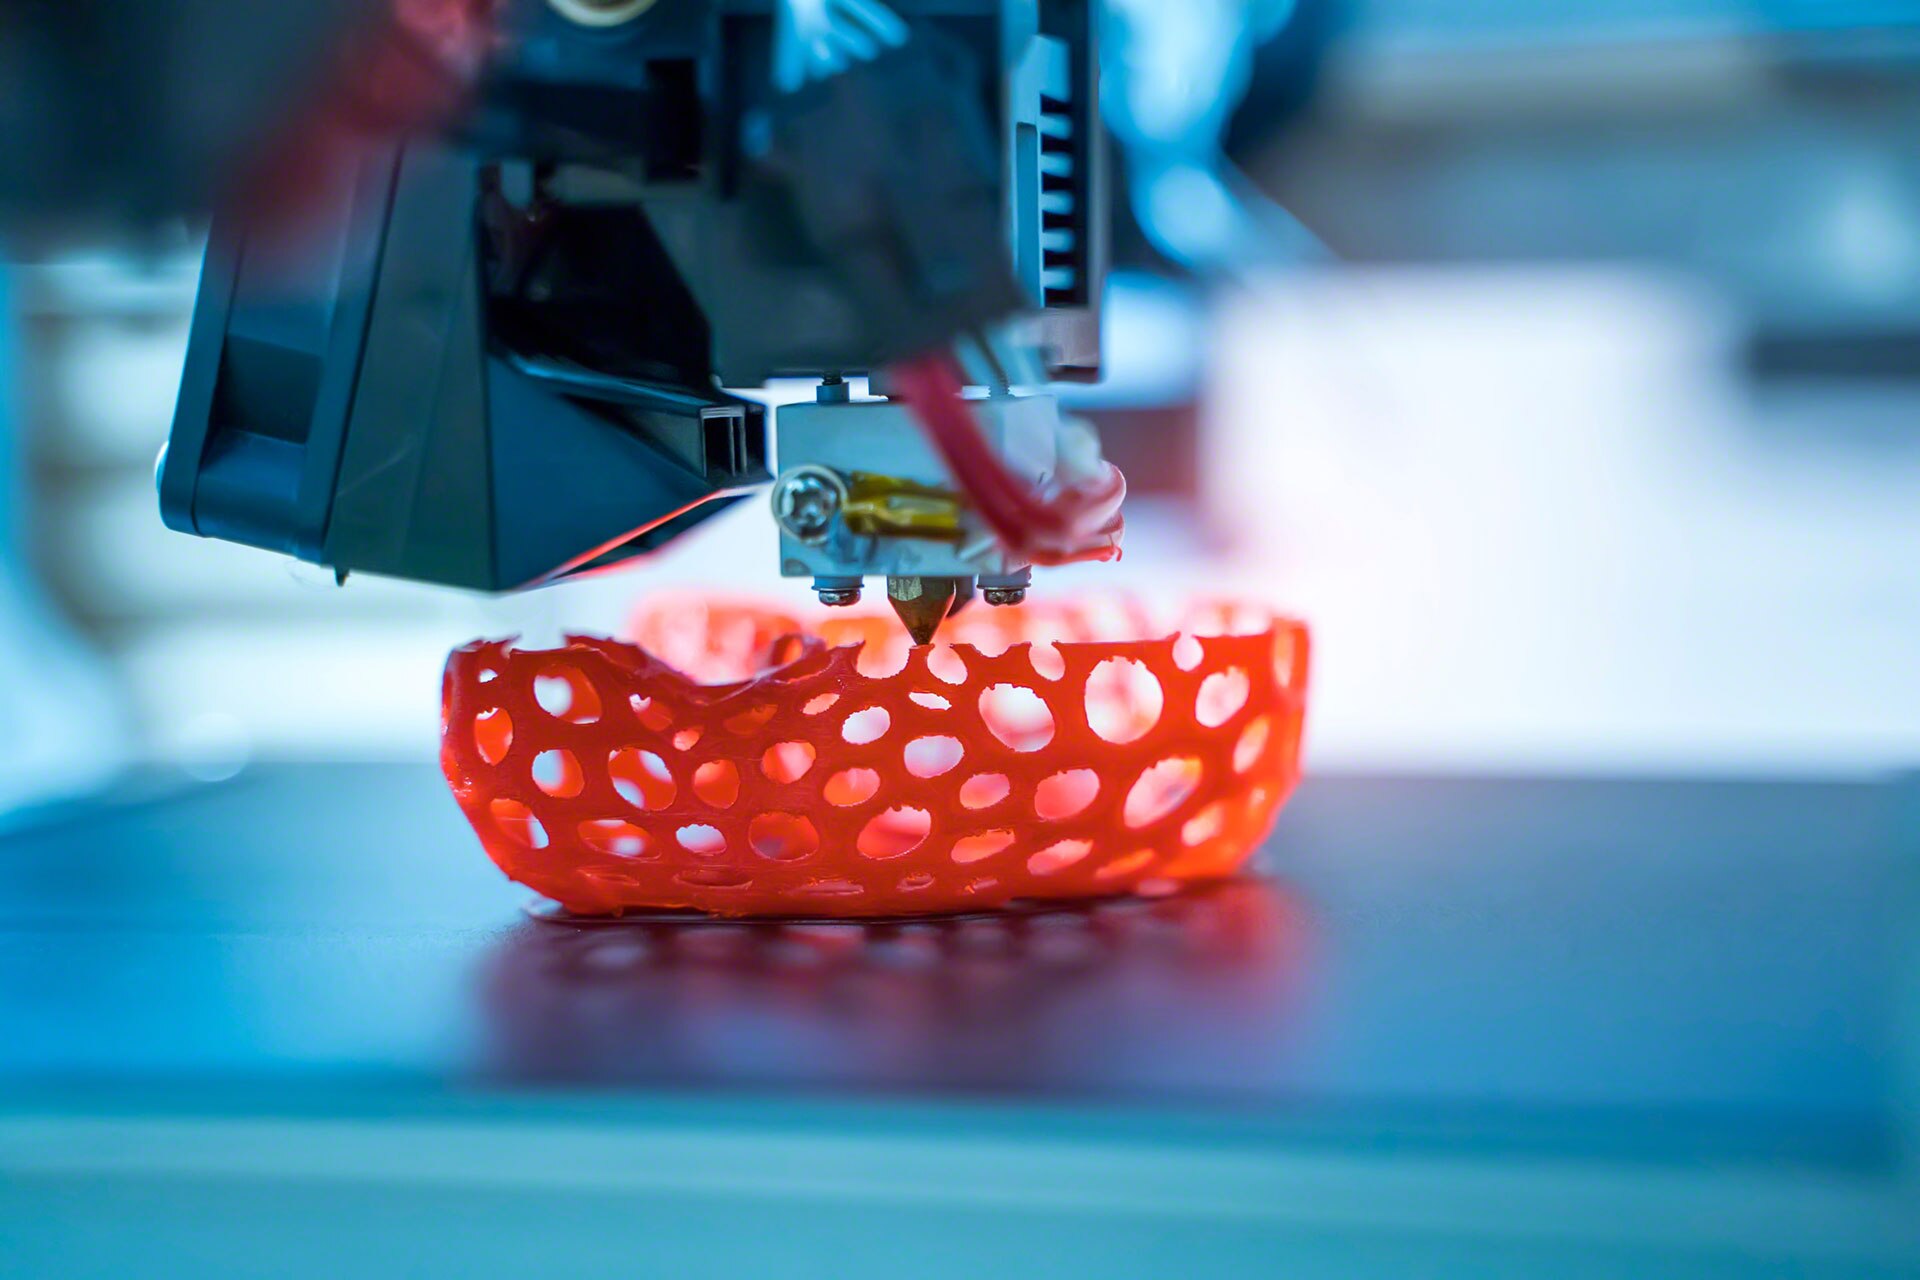 Produzione additiva: la stampa 3D digitalizza la lavorazione industriale